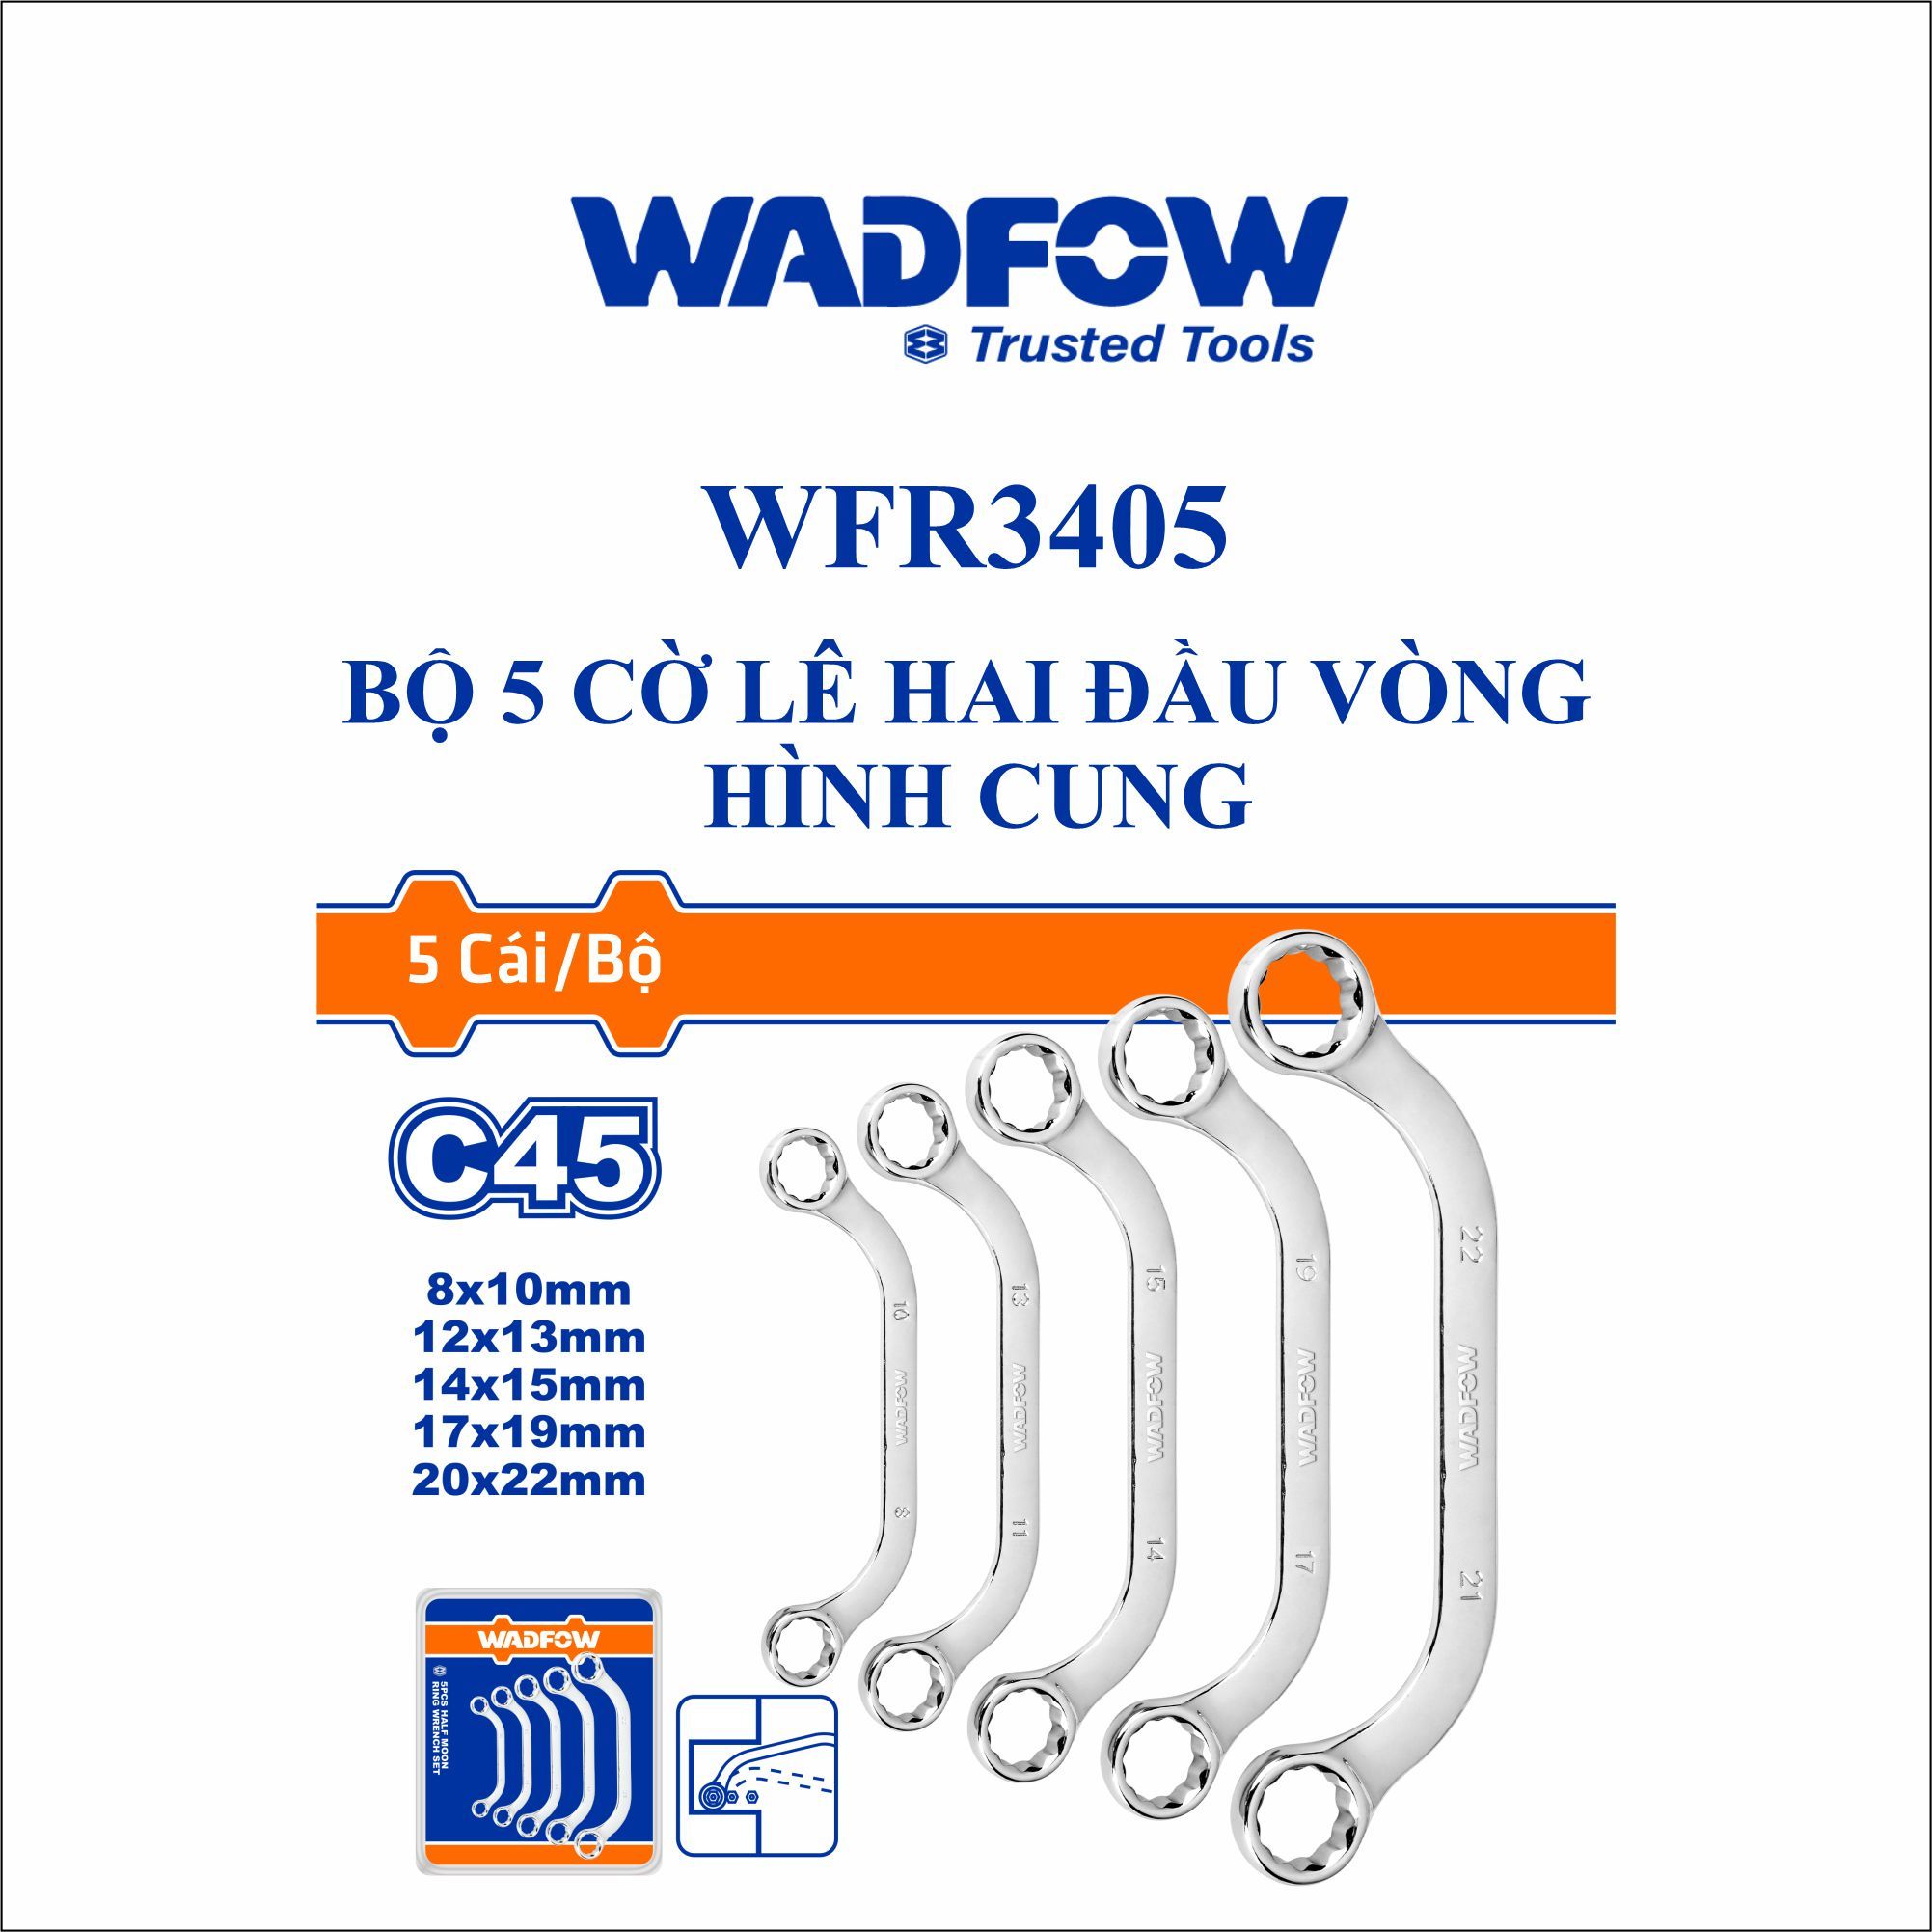  Bộ 5 cờ lê hai đầu vòng hình cung WADFOW WFR3405 